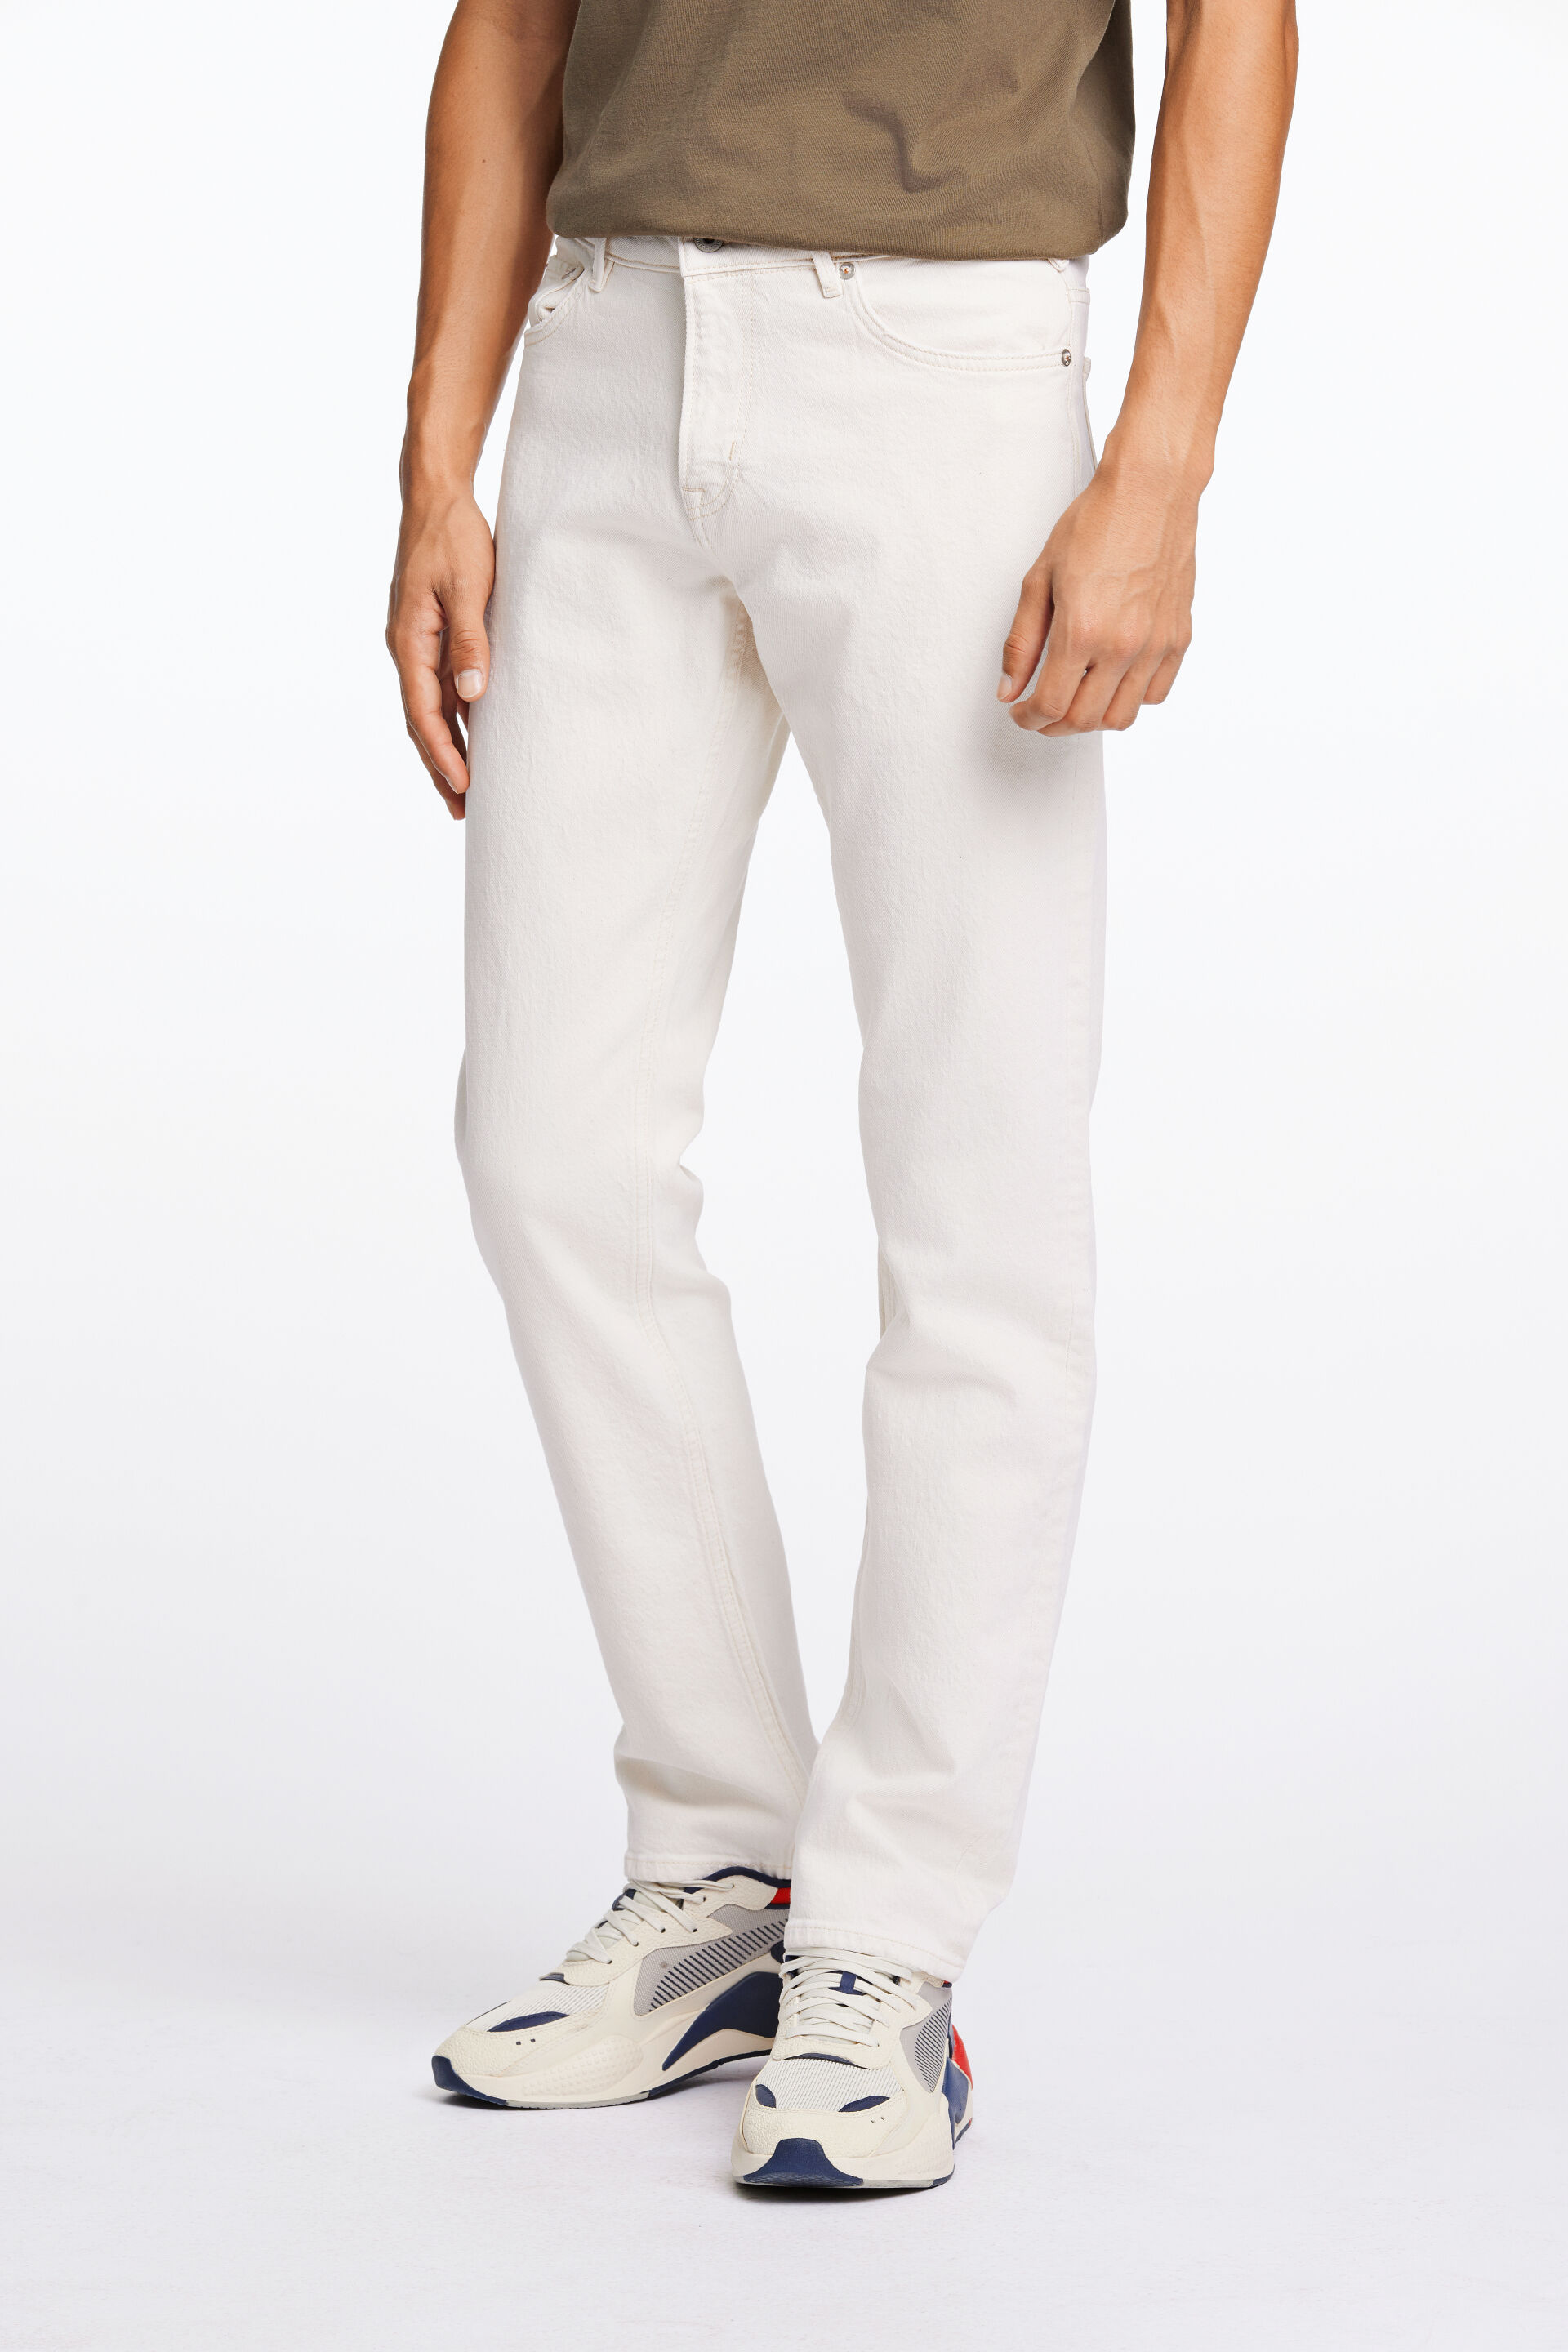 Junk de Luxe  Jeans Hvid 60-022019